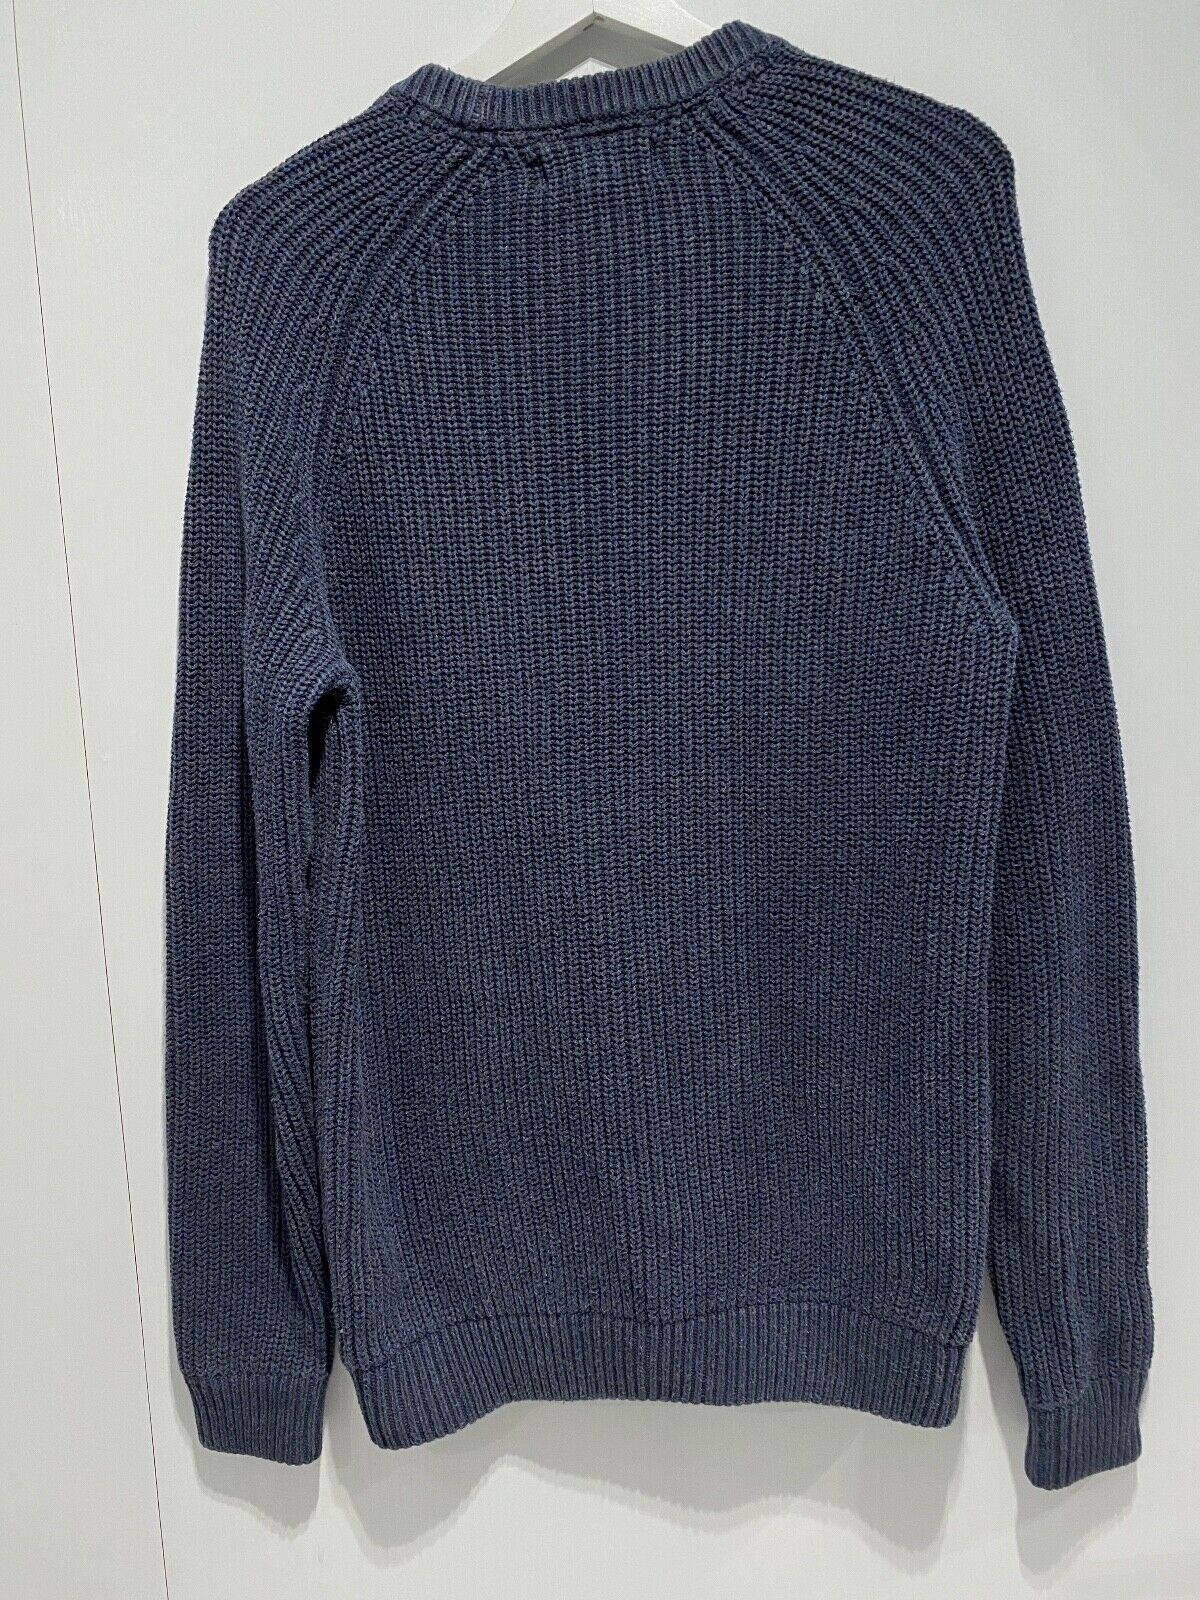 Fredrick Anderson Copenhagen sweater Men's size M | eBay